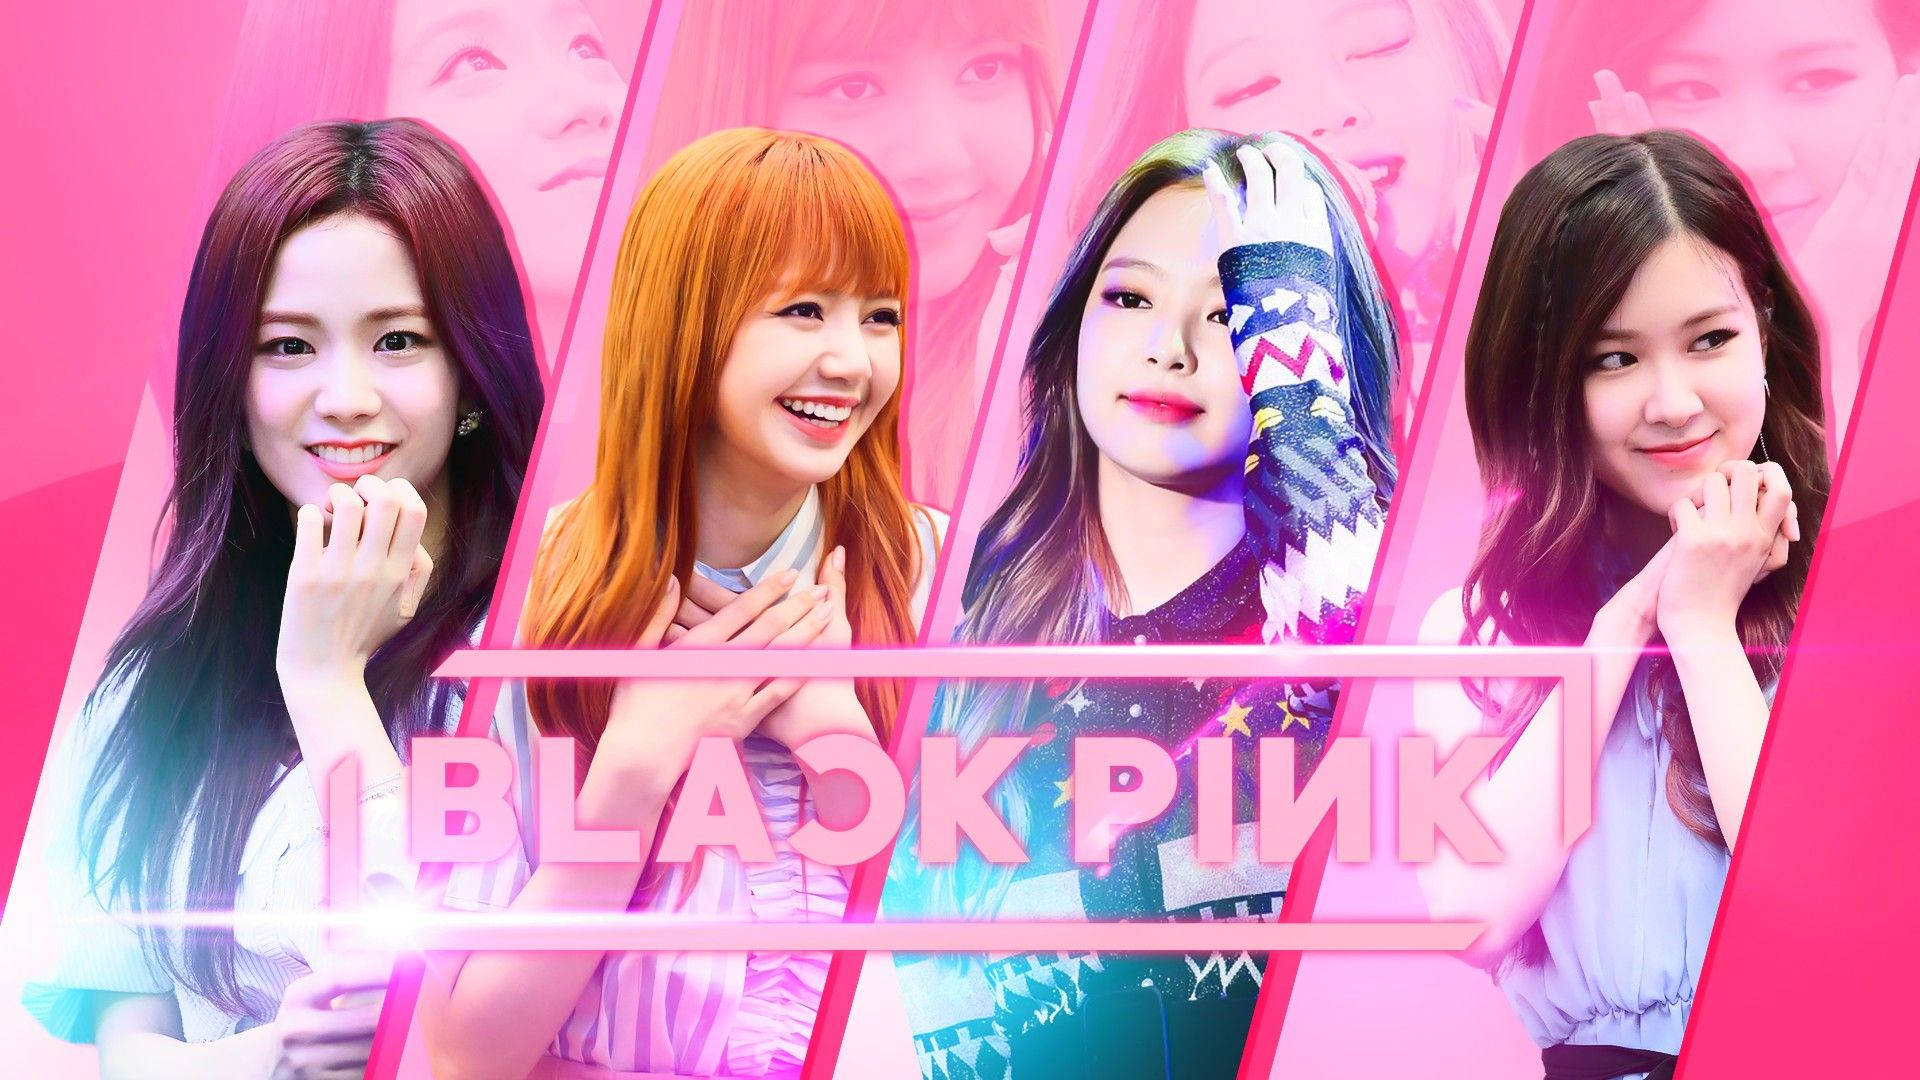 Blackpink Korean Girl Group